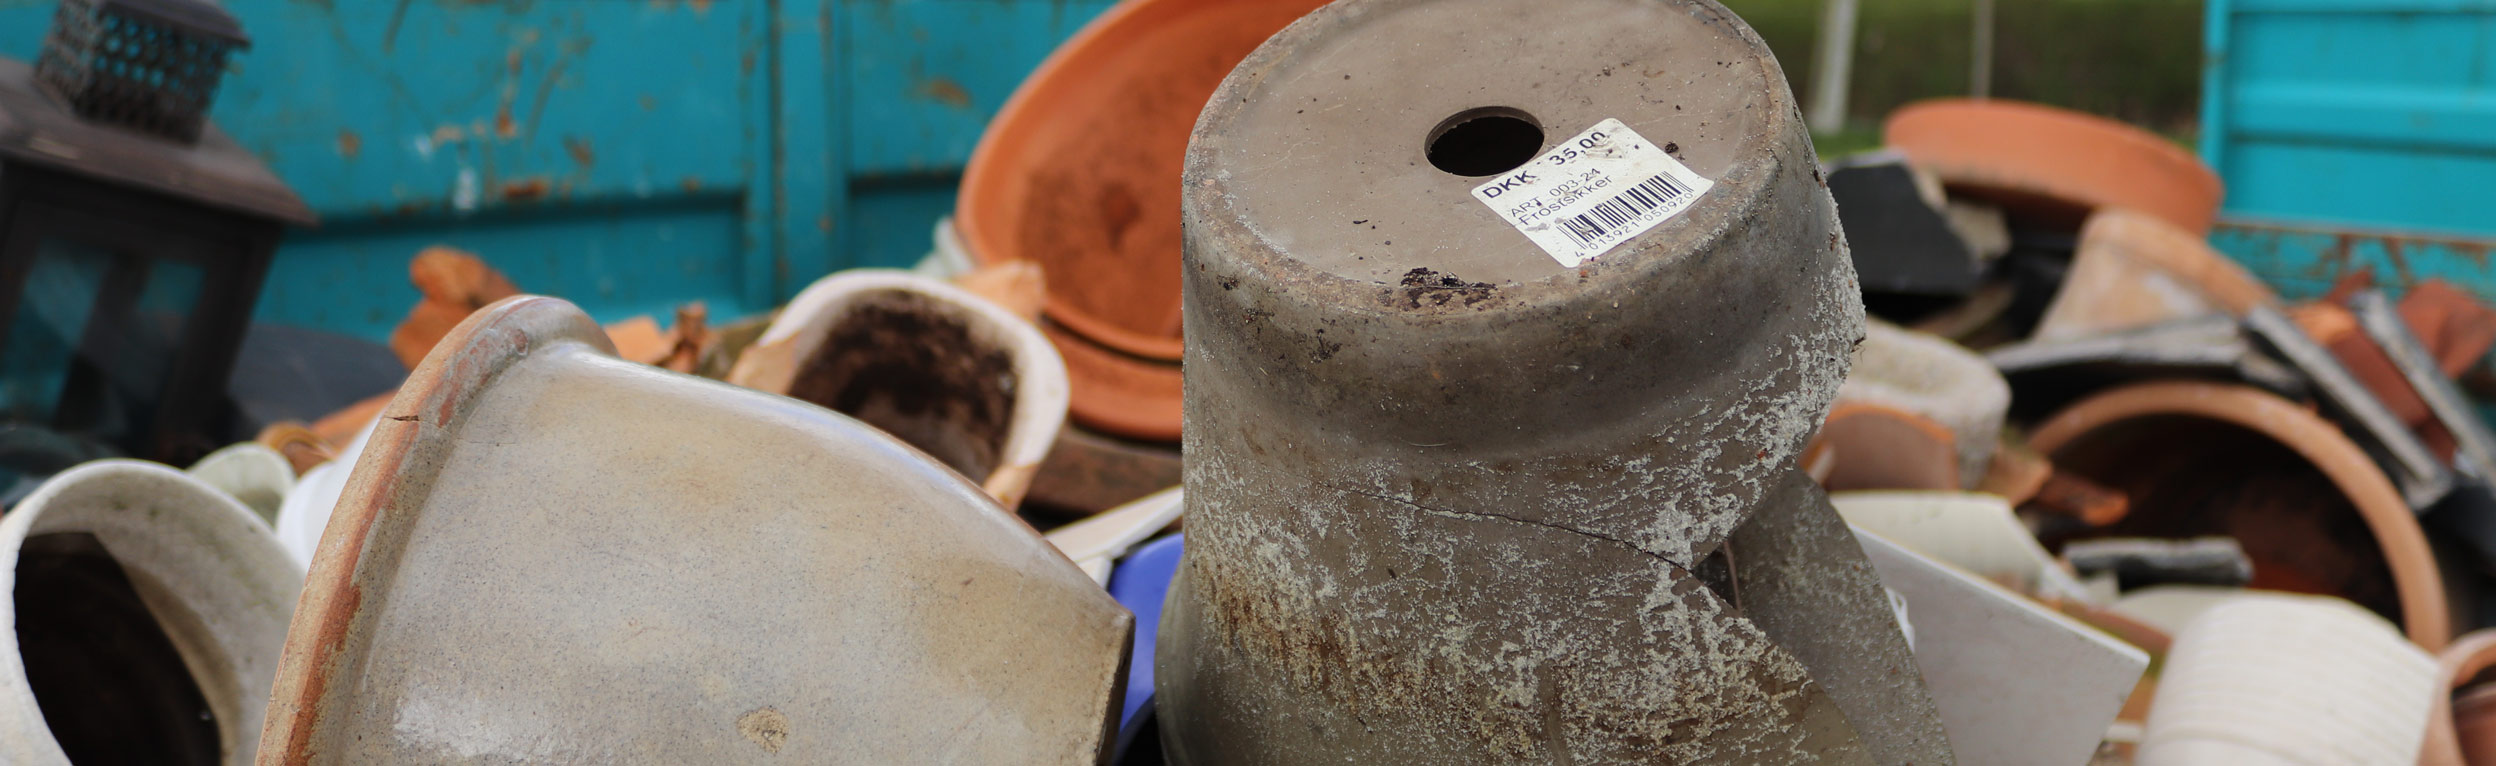 Krukker og andet keramik ligger i container på genbrugsplads